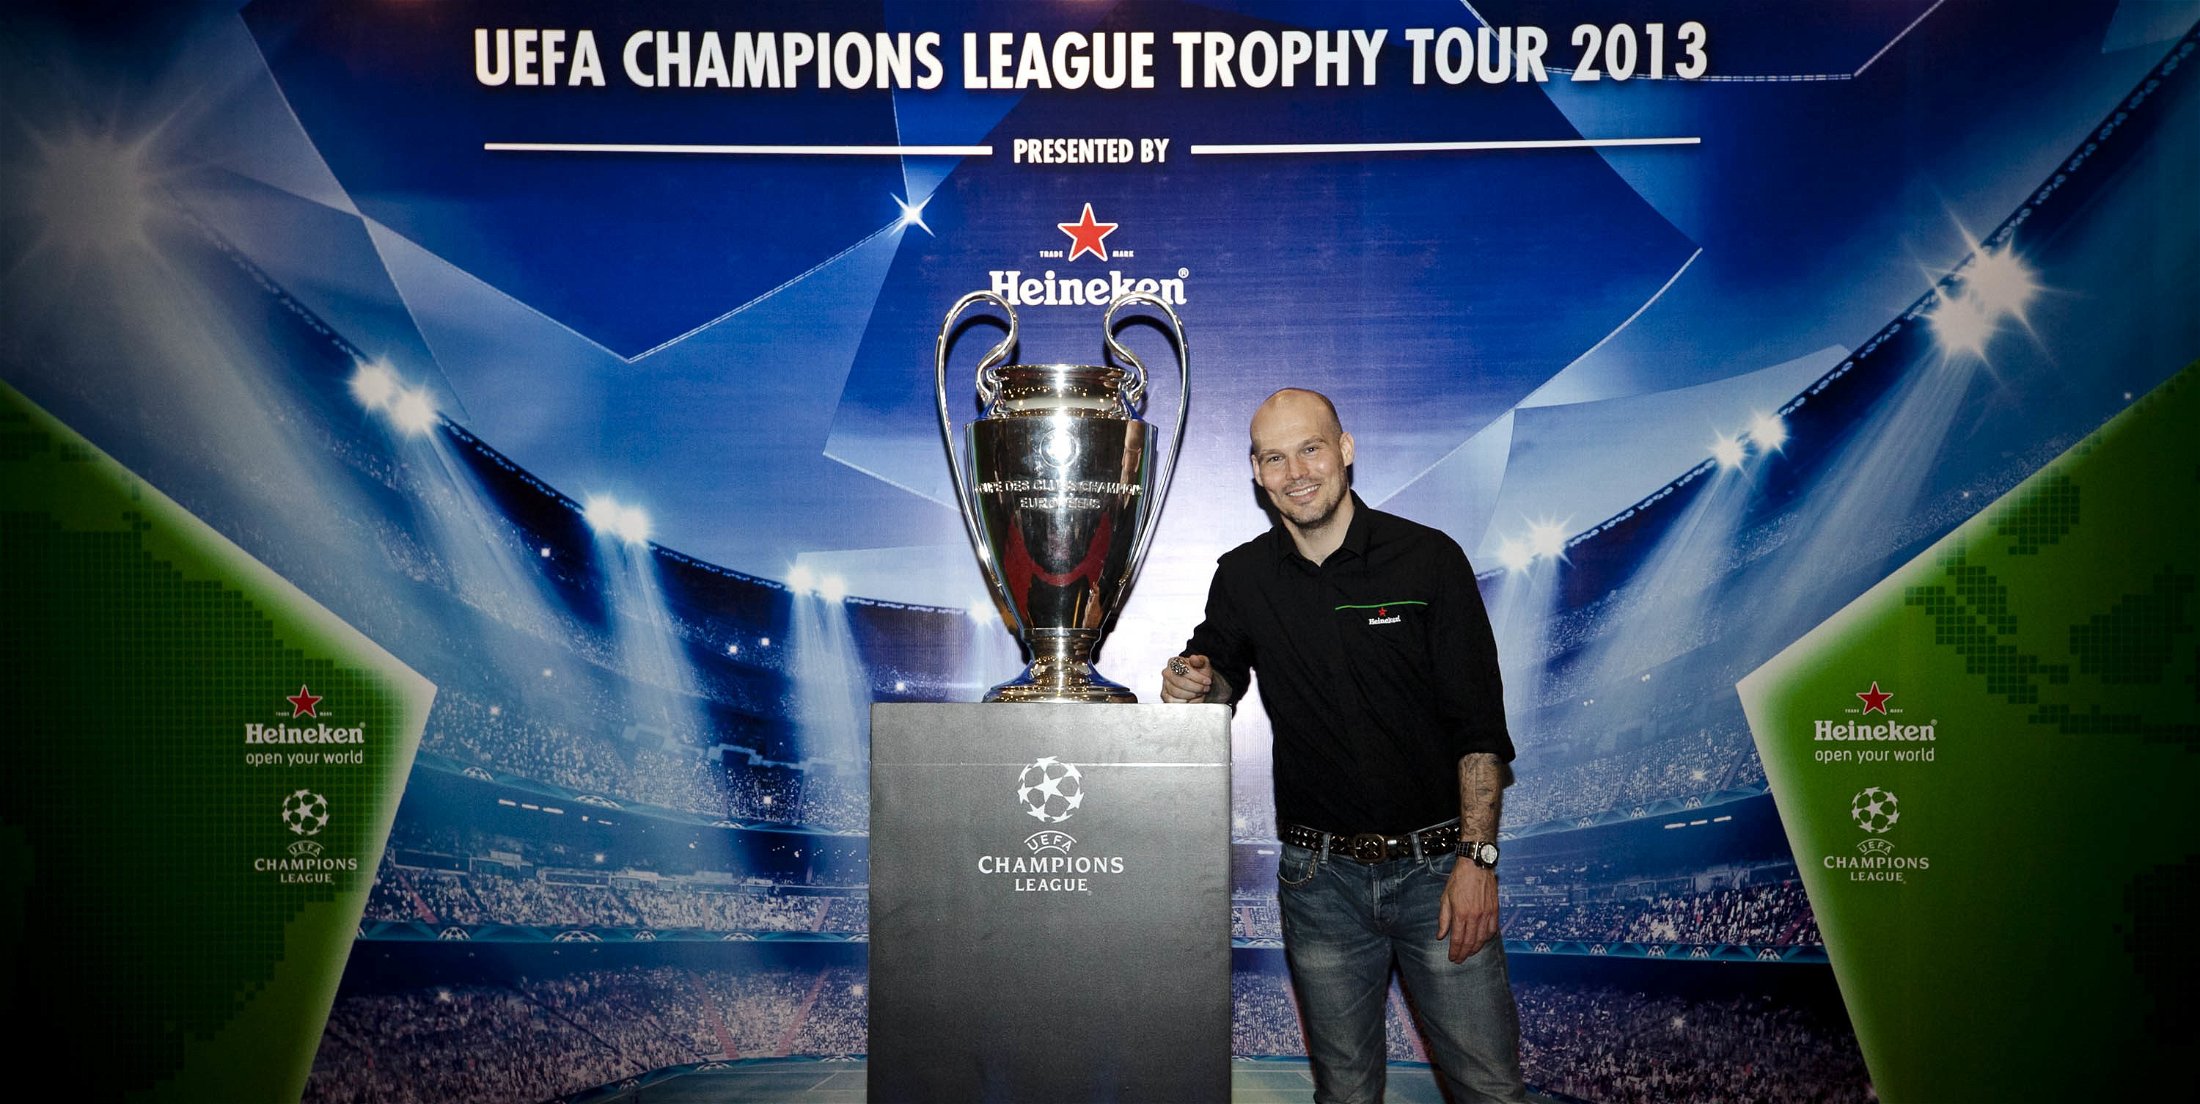 UEFA Champions League Trophy Tour 